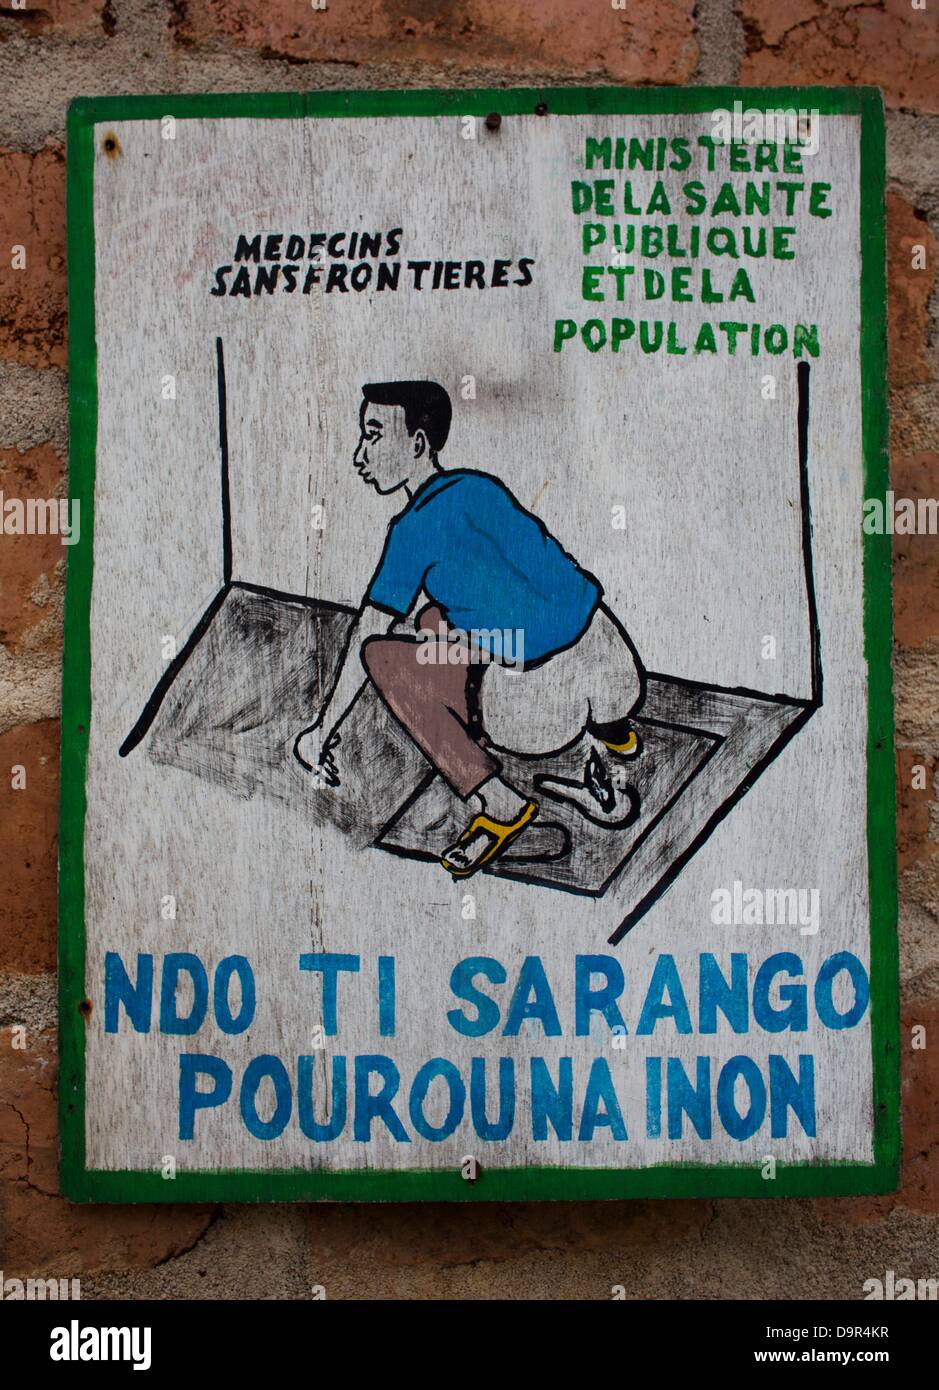 health education at the latrine in batangafo hospital, CAR Stock Photo